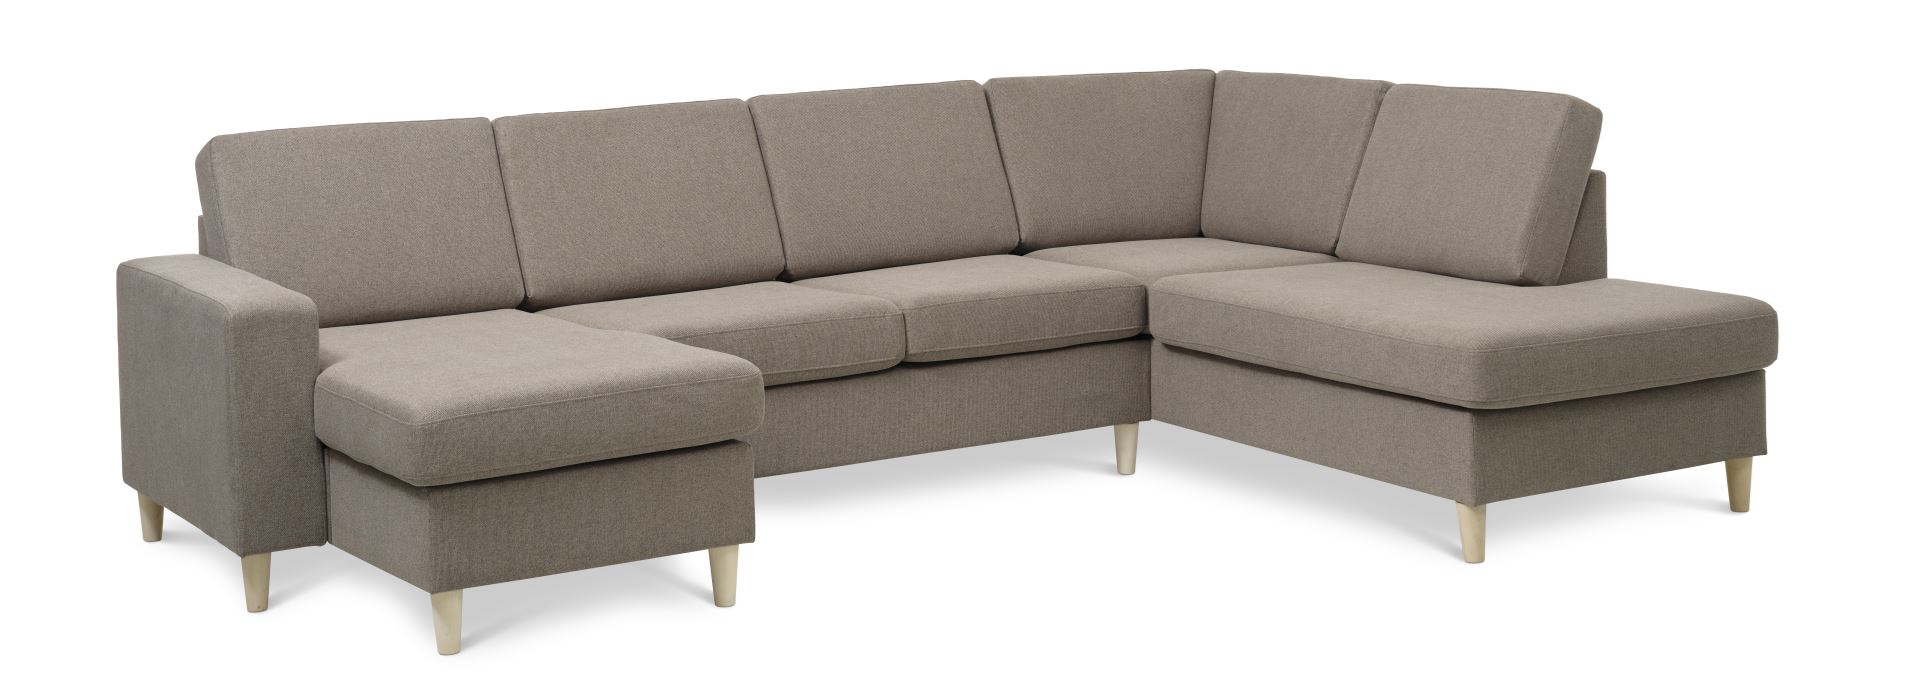 Pan set 5 U OE right sofa med chaiselong - antelope beige polyester stof og natur træ